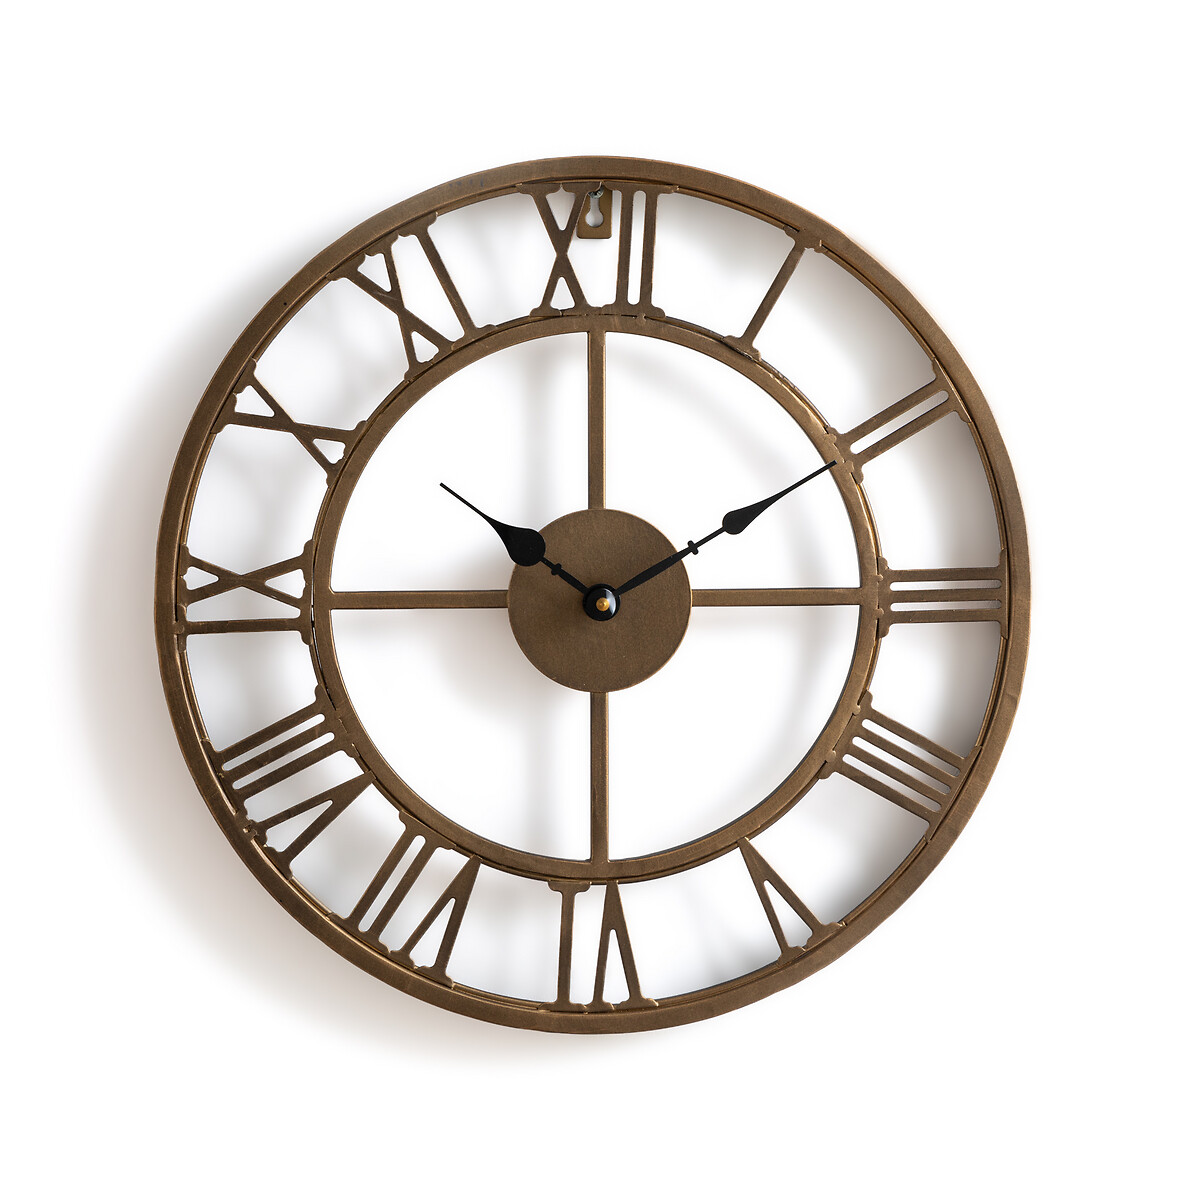 Zivos Metal Wall Clock, Diameter 40cm